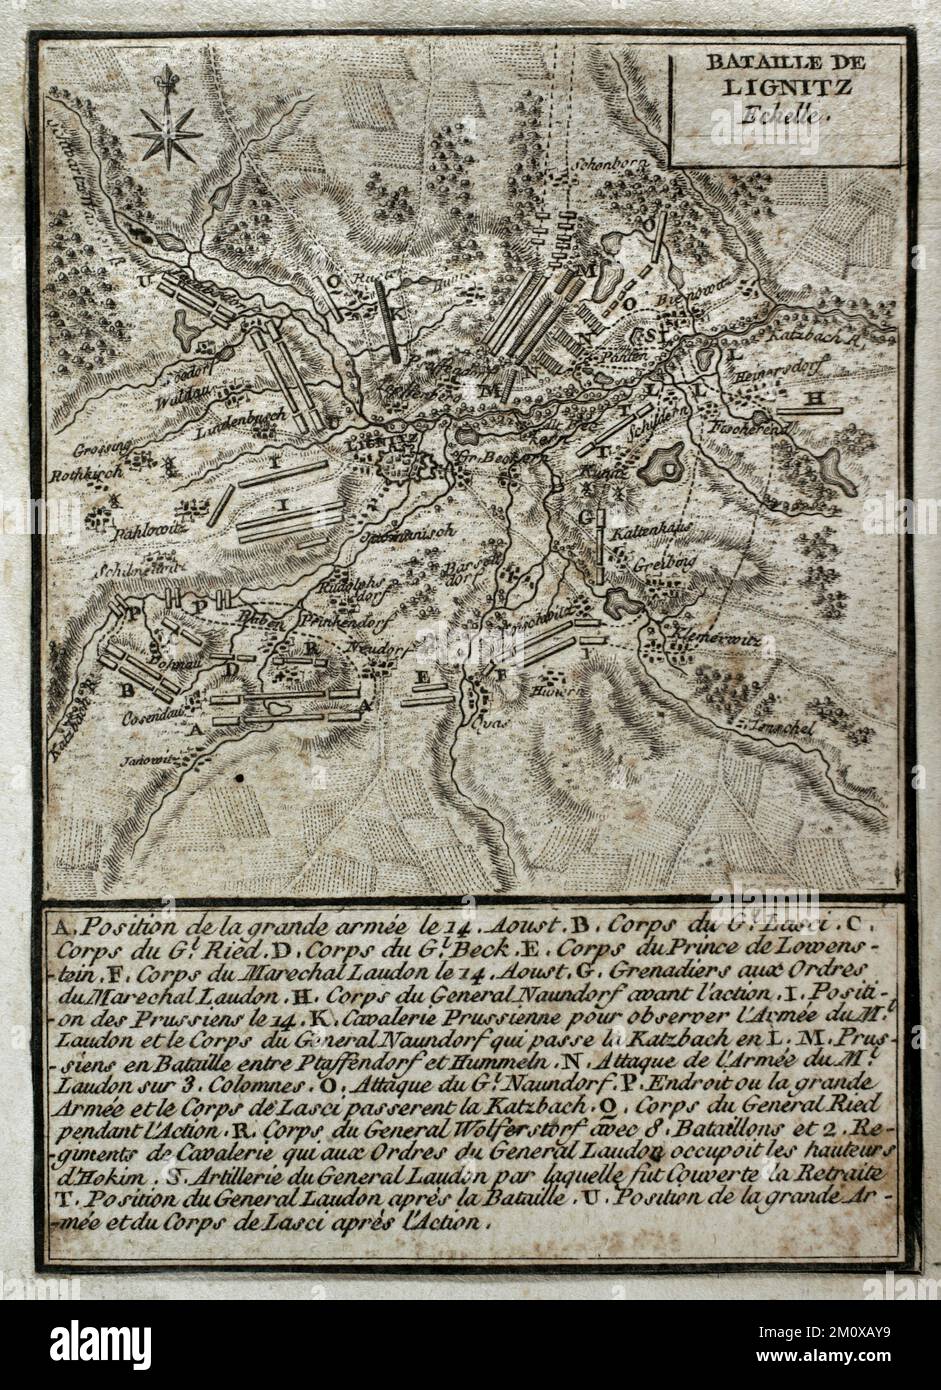 Guerre de sept ans (1756-1763). Troisième guerre de Silésie. Carte de la bataille de Liegnitz (15 août 1760). Il a eu lieu sur la rive de la rivière Katzbach, dans le nord de la Silésie. Une armée autrichienne impériale, commandée par le maréchal Daun, face à l'armée prussienne dirigée par Frédéric le Grand. Les Autrichiens ont été battus par les Prussiens. Publié en 1765 par le cartographe Jean de Beaurain (1696-1771) comme illustration de sa Grande carte d'Allemagne, avec les événements qui ont eu lieu pendant la guerre de sept ans. Édition française, 1765. Bibliothèque historique militaire de Barcelone (Biblioteca Histórico Militar de Ba Banque D'Images